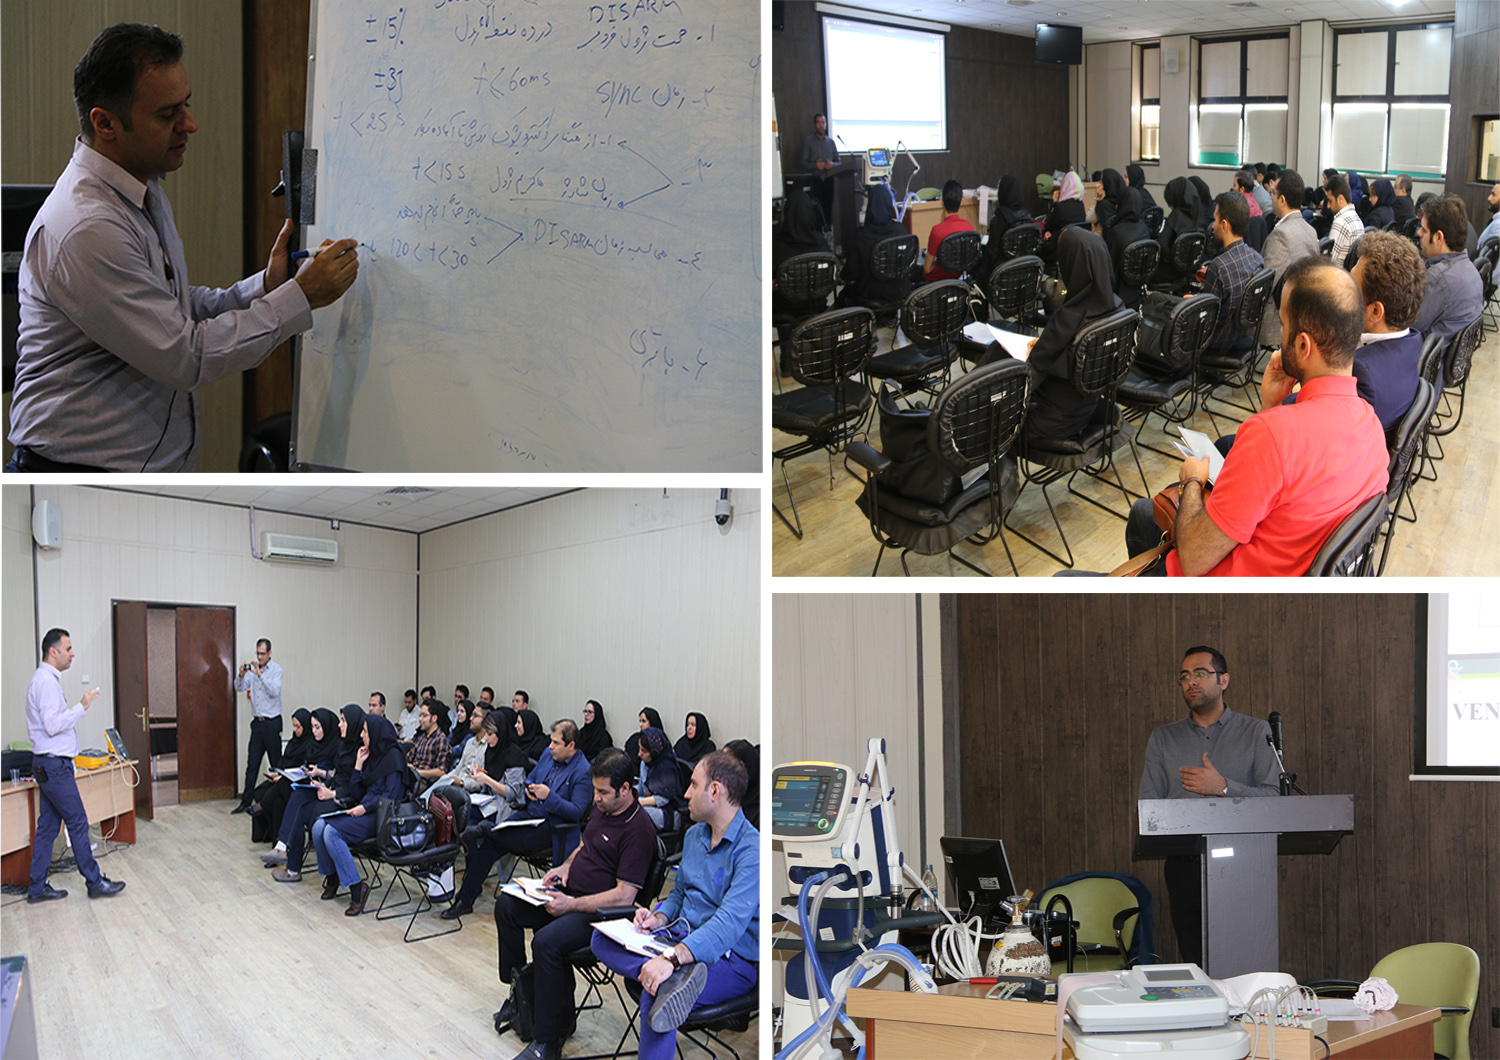 برگزاری کارگاه کنترل کیفی تجهیزات پزشکی توسط معاونت غذا و دارو دانشگاه ایران در مرکز همایش های رازی